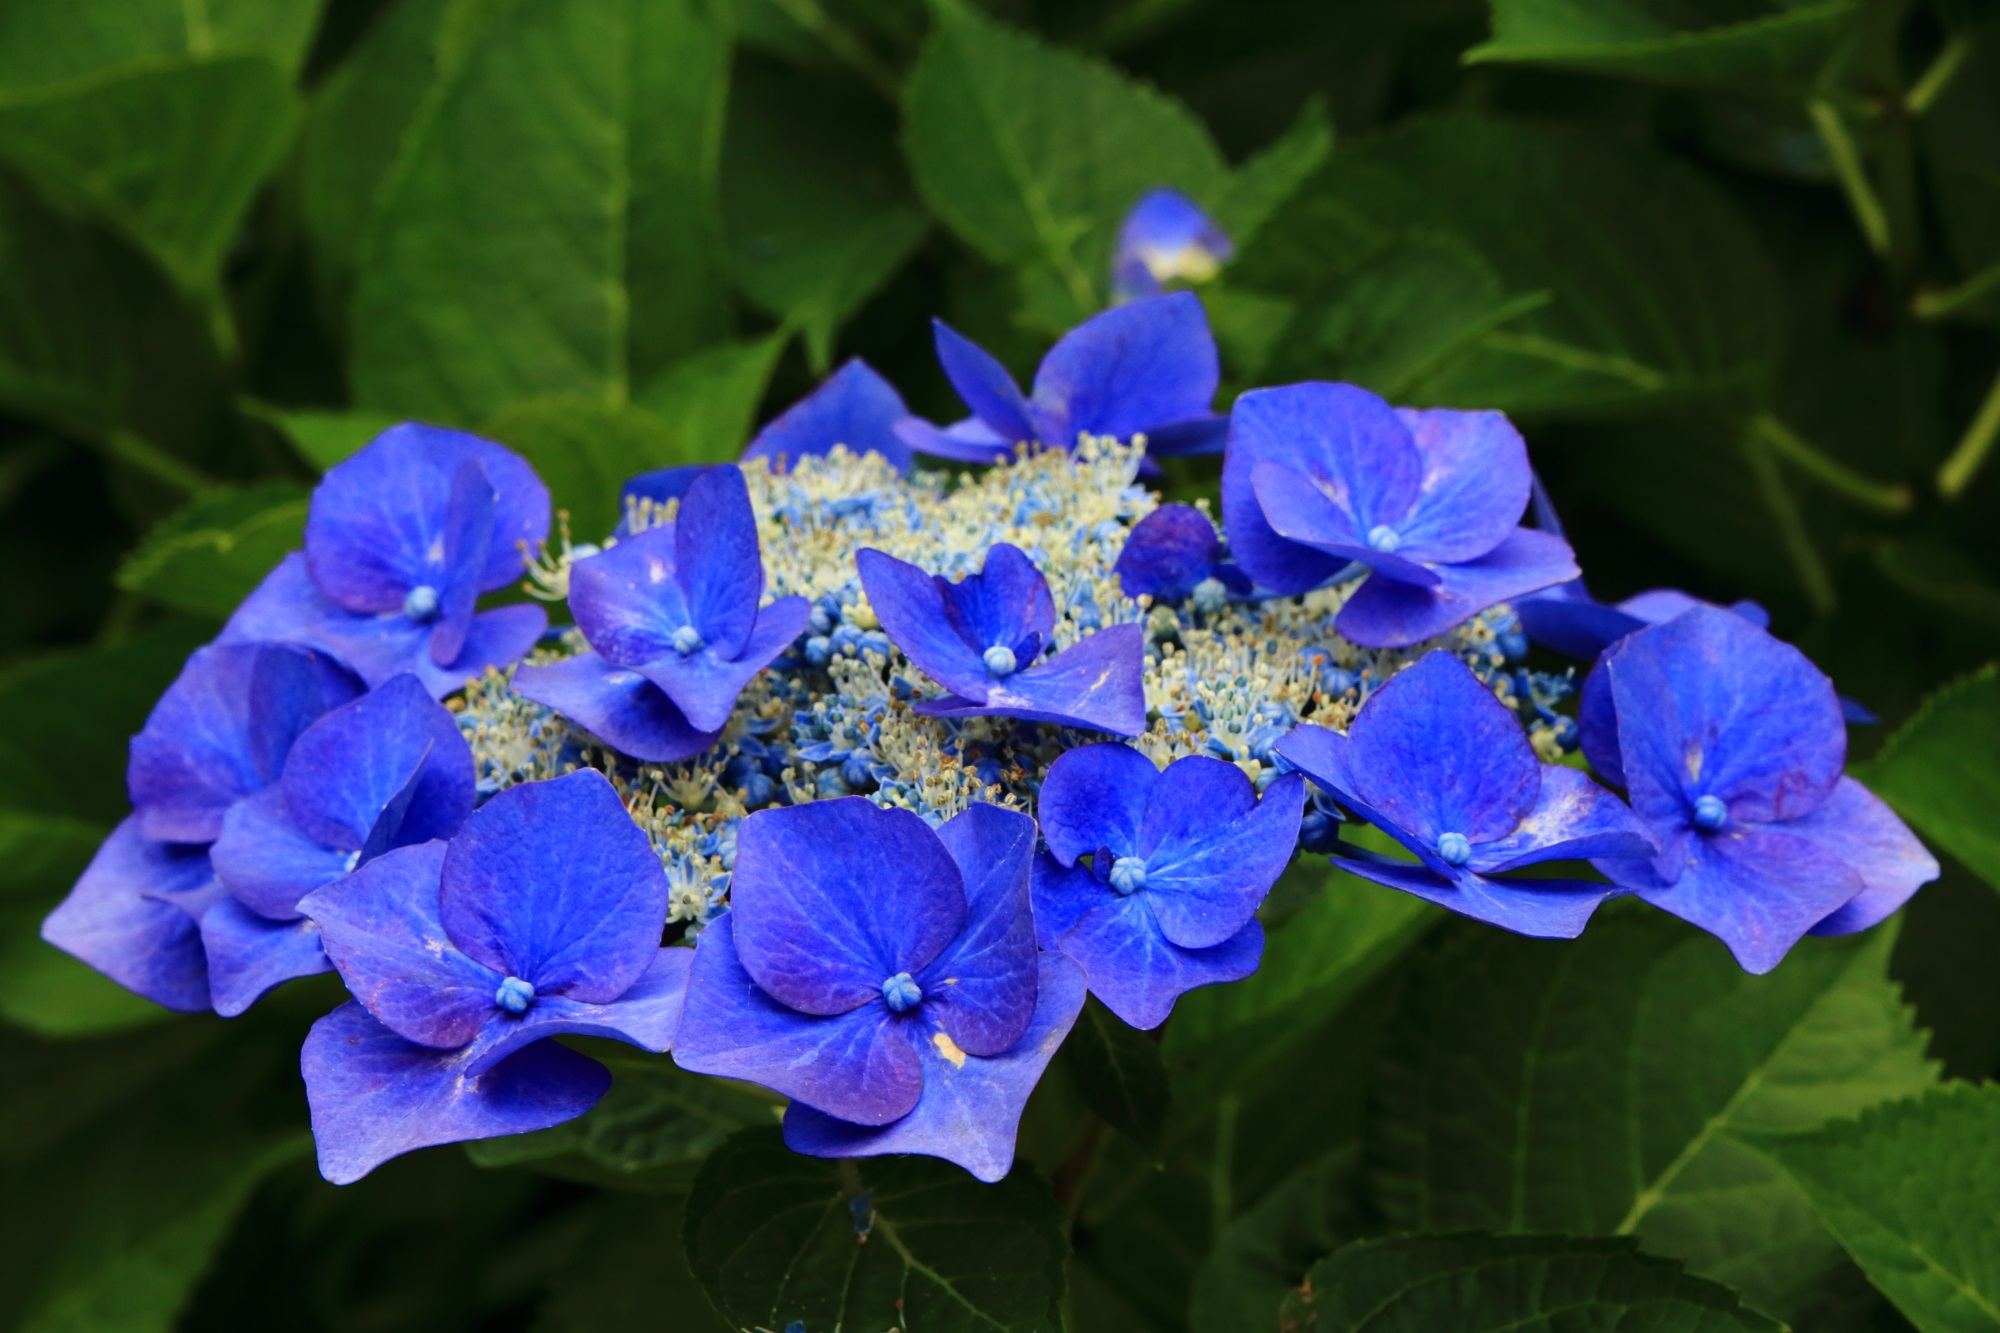 舞鶴自然文化園の艶やかな色合いの青系の額紫陽花